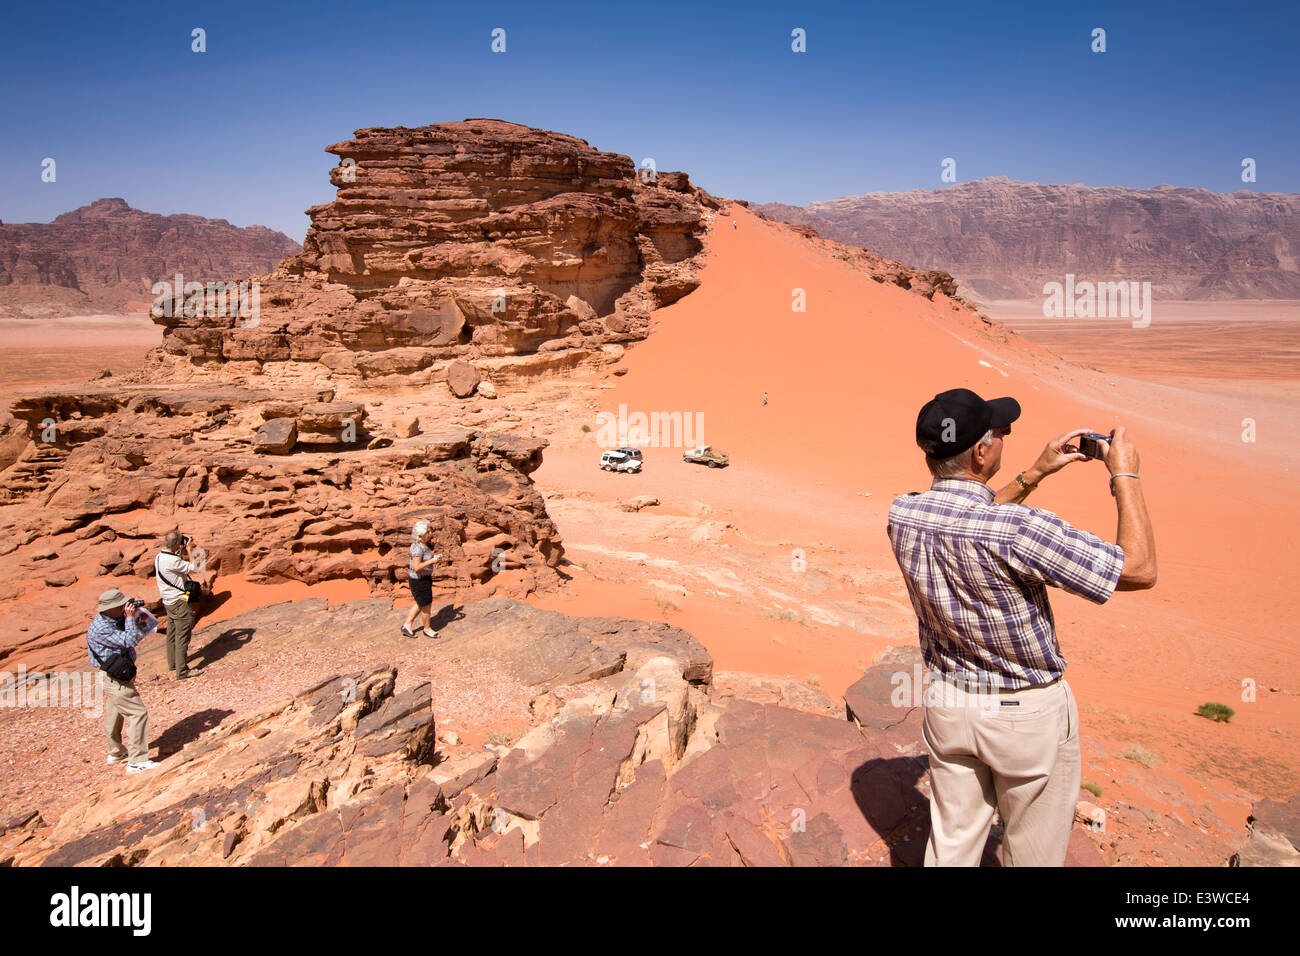 Jordania, Wadi Rum, turistas occidentales ver dunas de arena roja de afloramiento rocoso Foto de stock